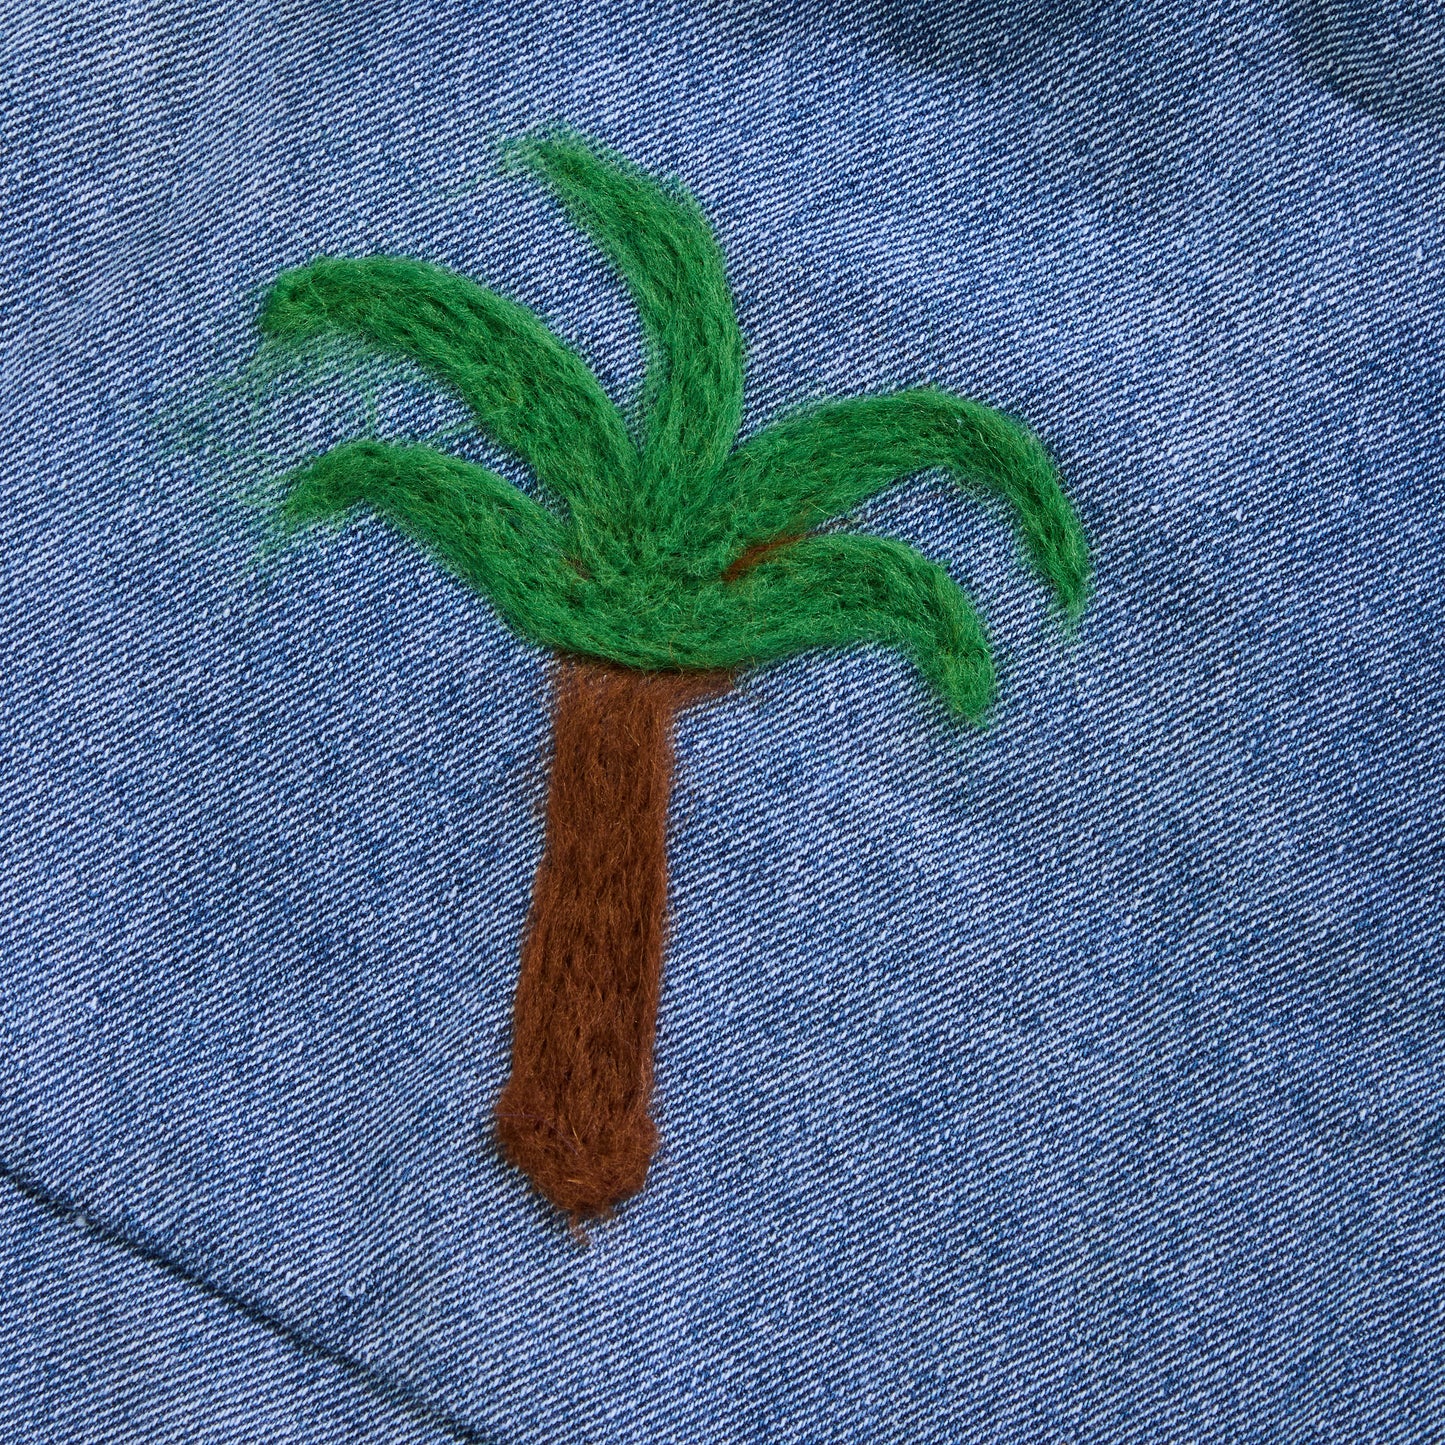 Frankie Oversized Denim Pant - Palm Tree - 3Y